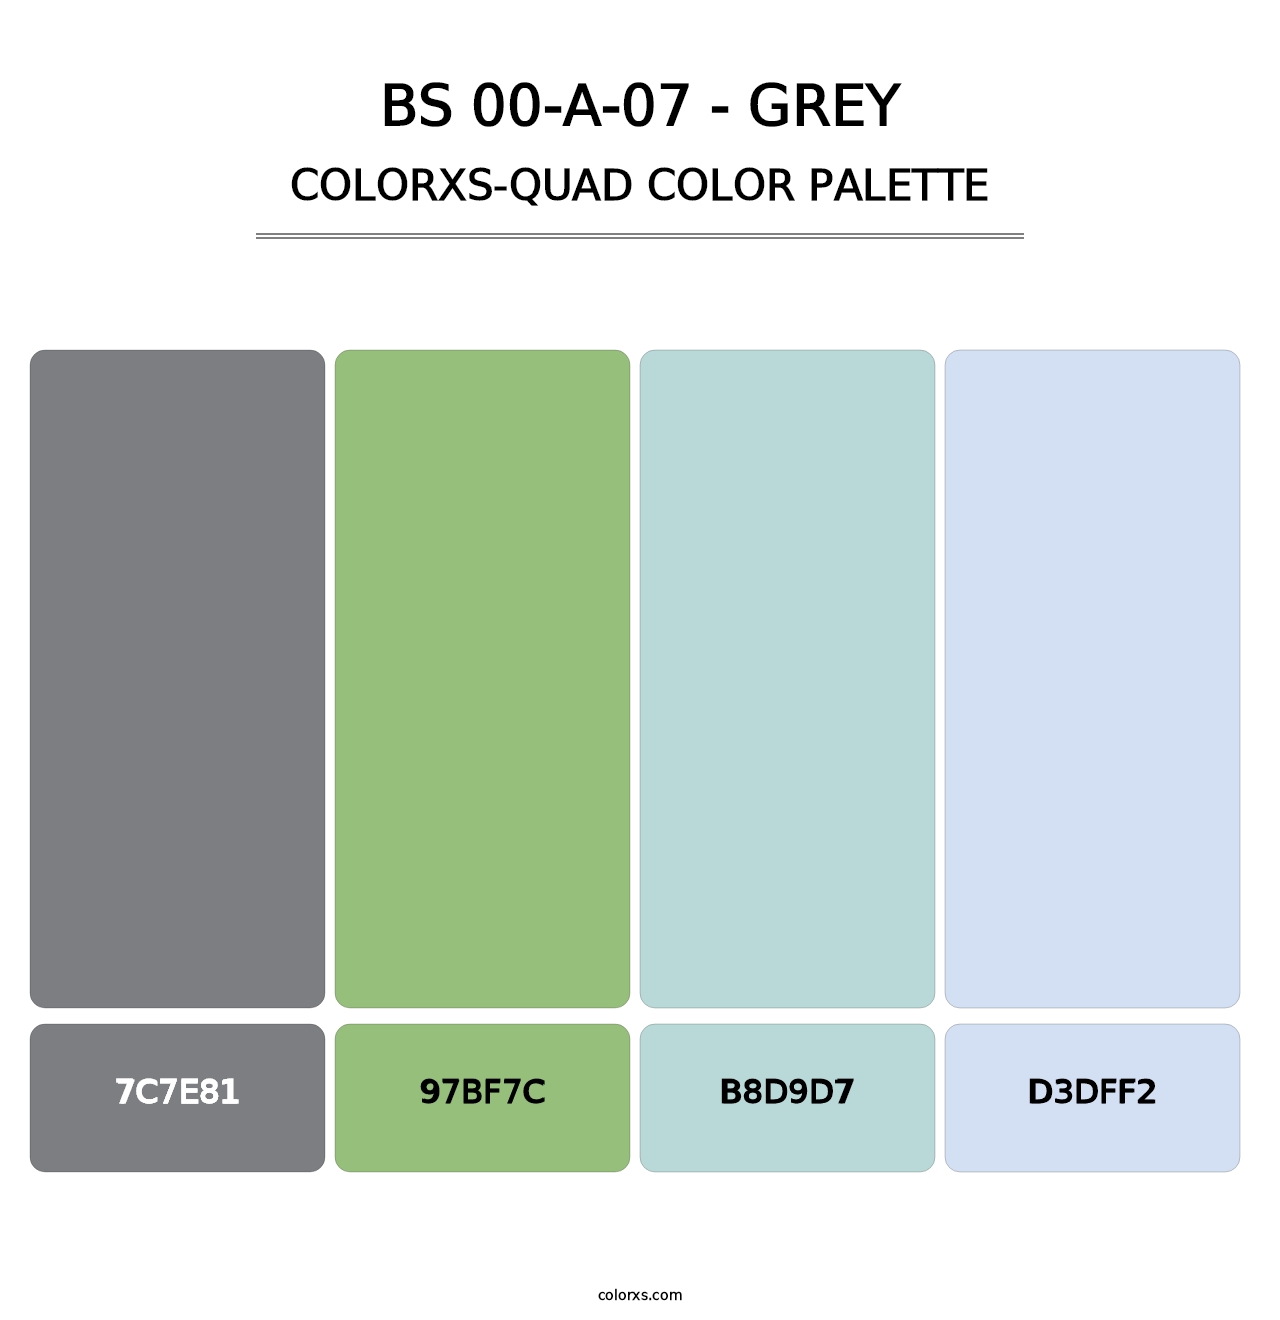 BS 00-A-07 - Grey - Colorxs Quad Palette